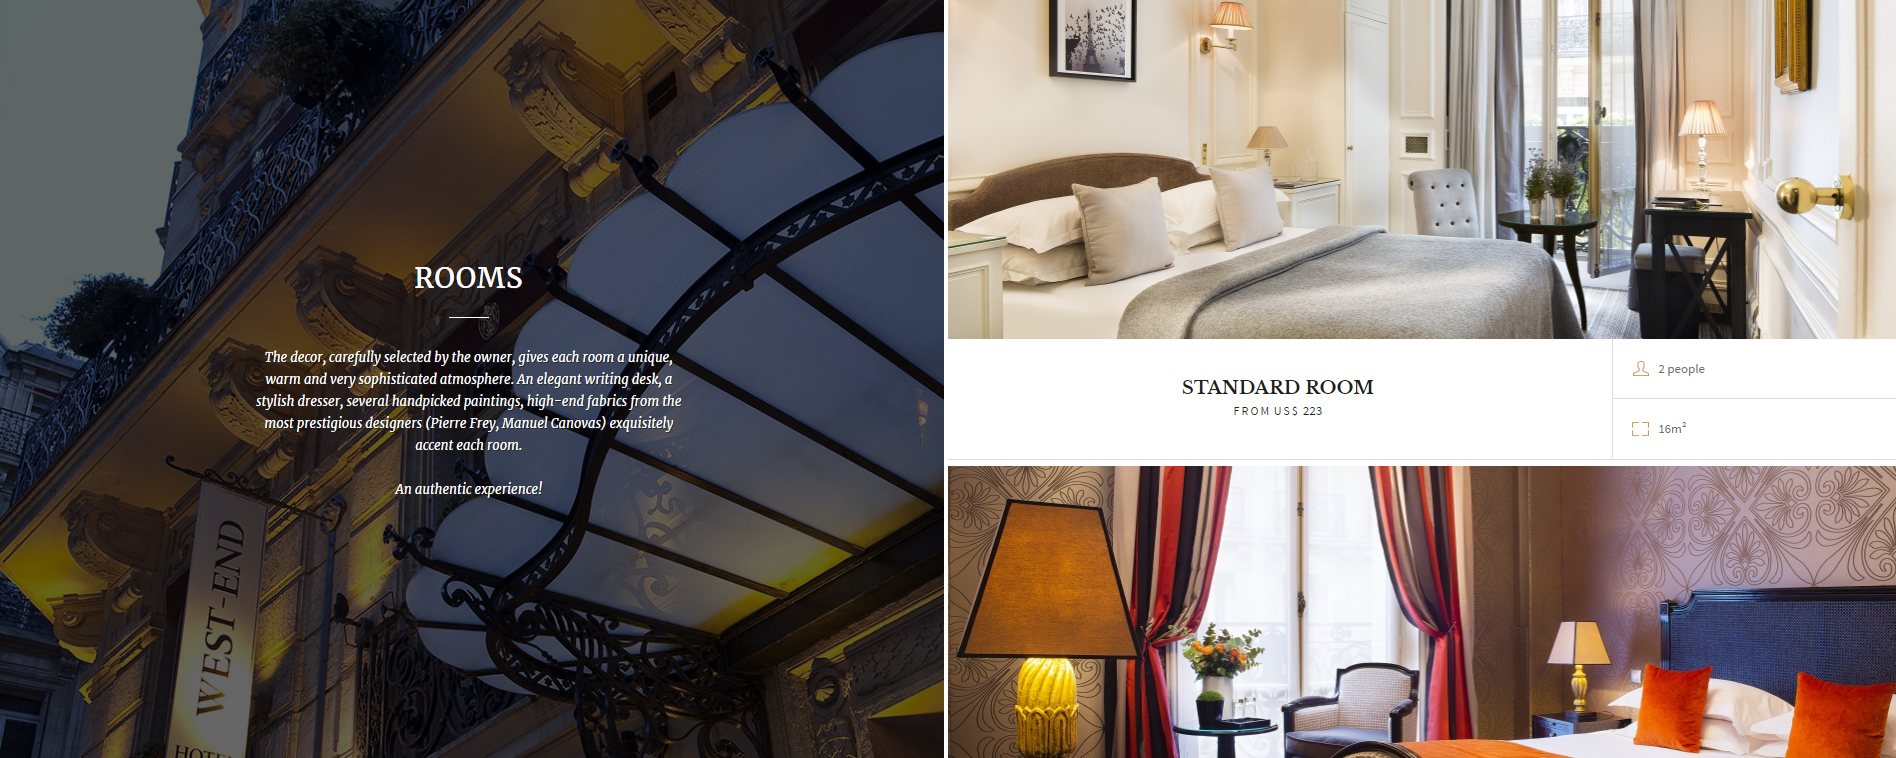 Galeria de fotos dos quartos do website do Hotel West End